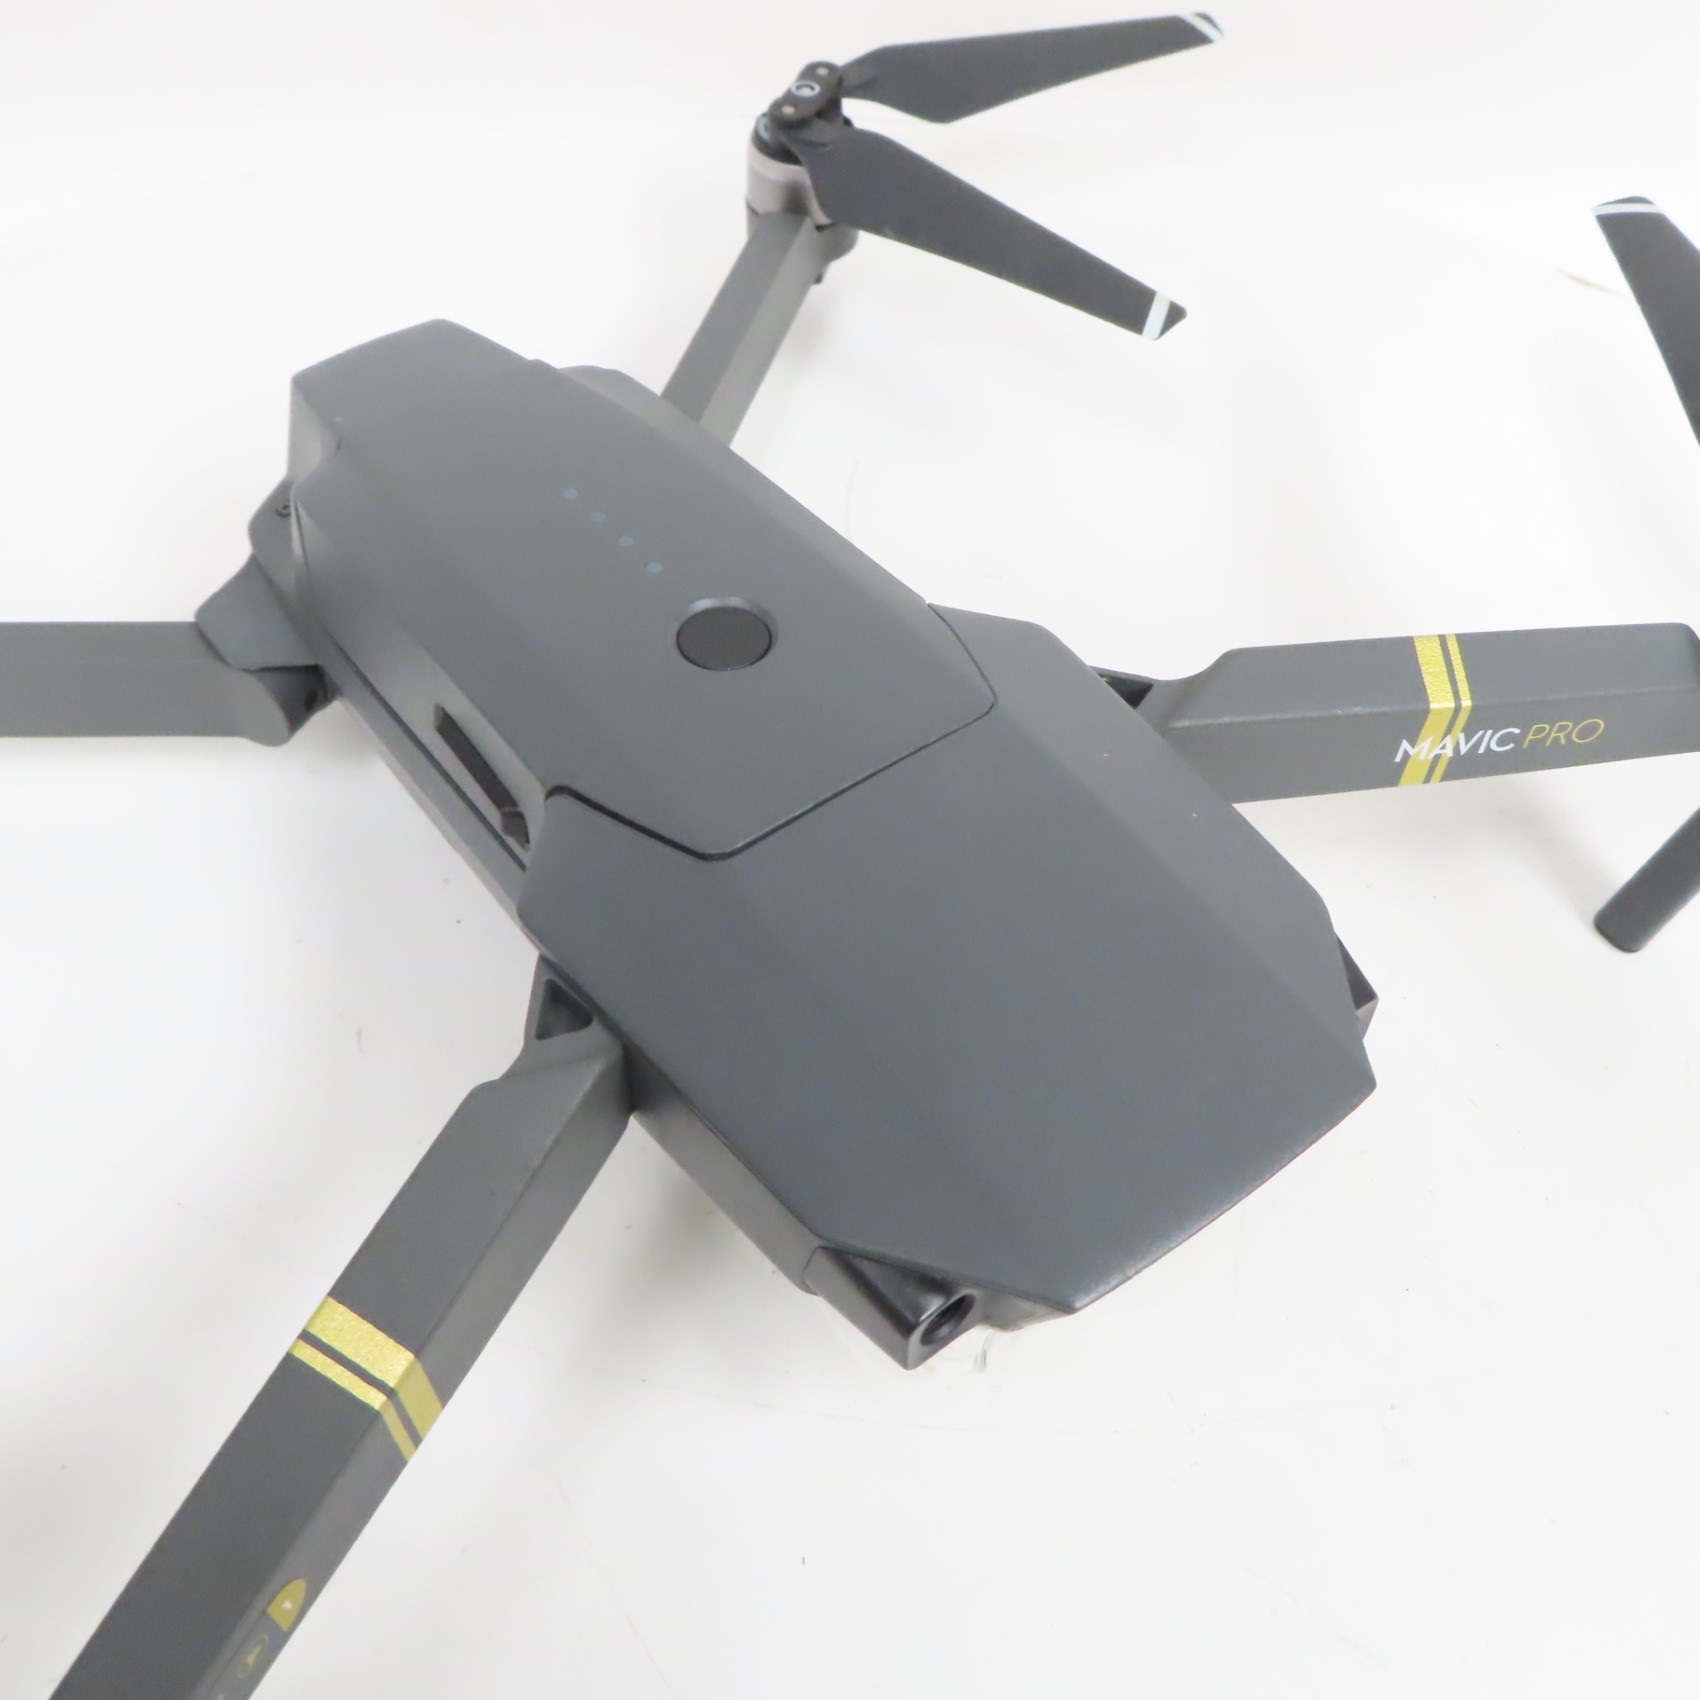 DJI M1P Mavic Pro 4K/12MP Quadcopter Camera Drone Kit